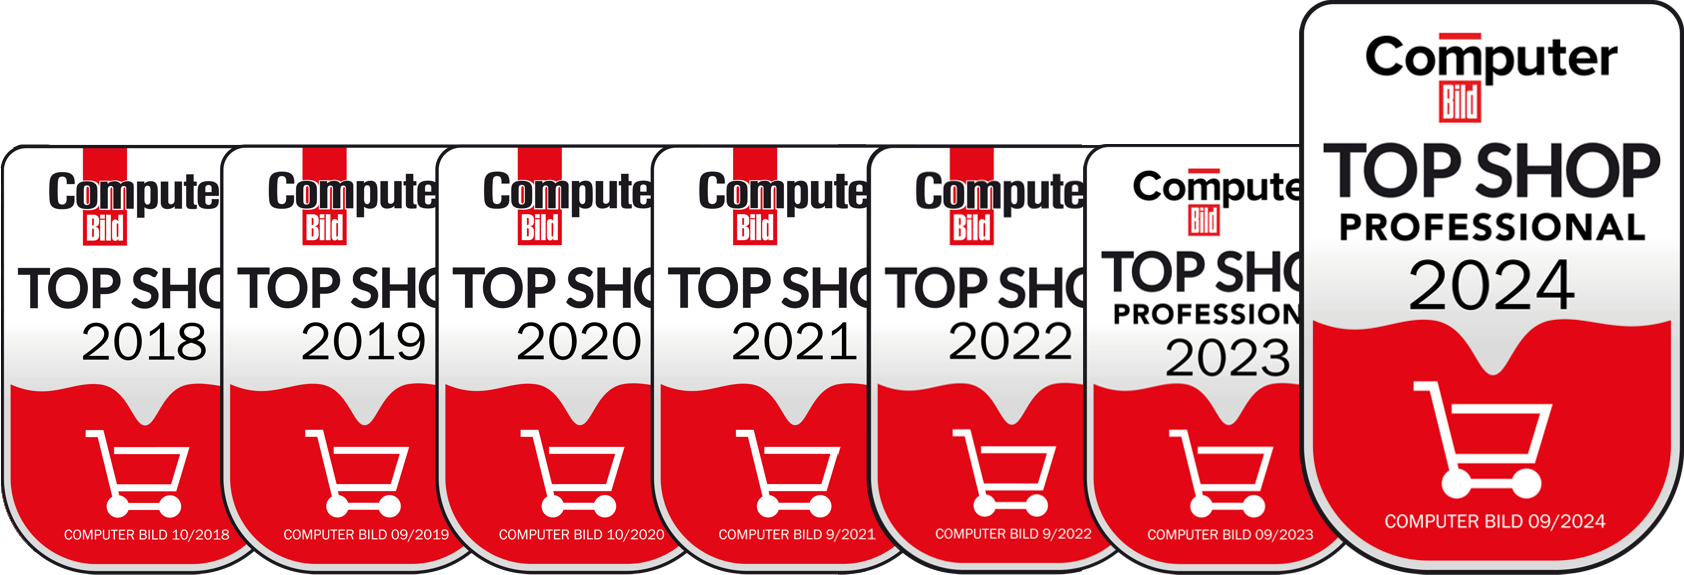 ComputerBild Top Shops 2020